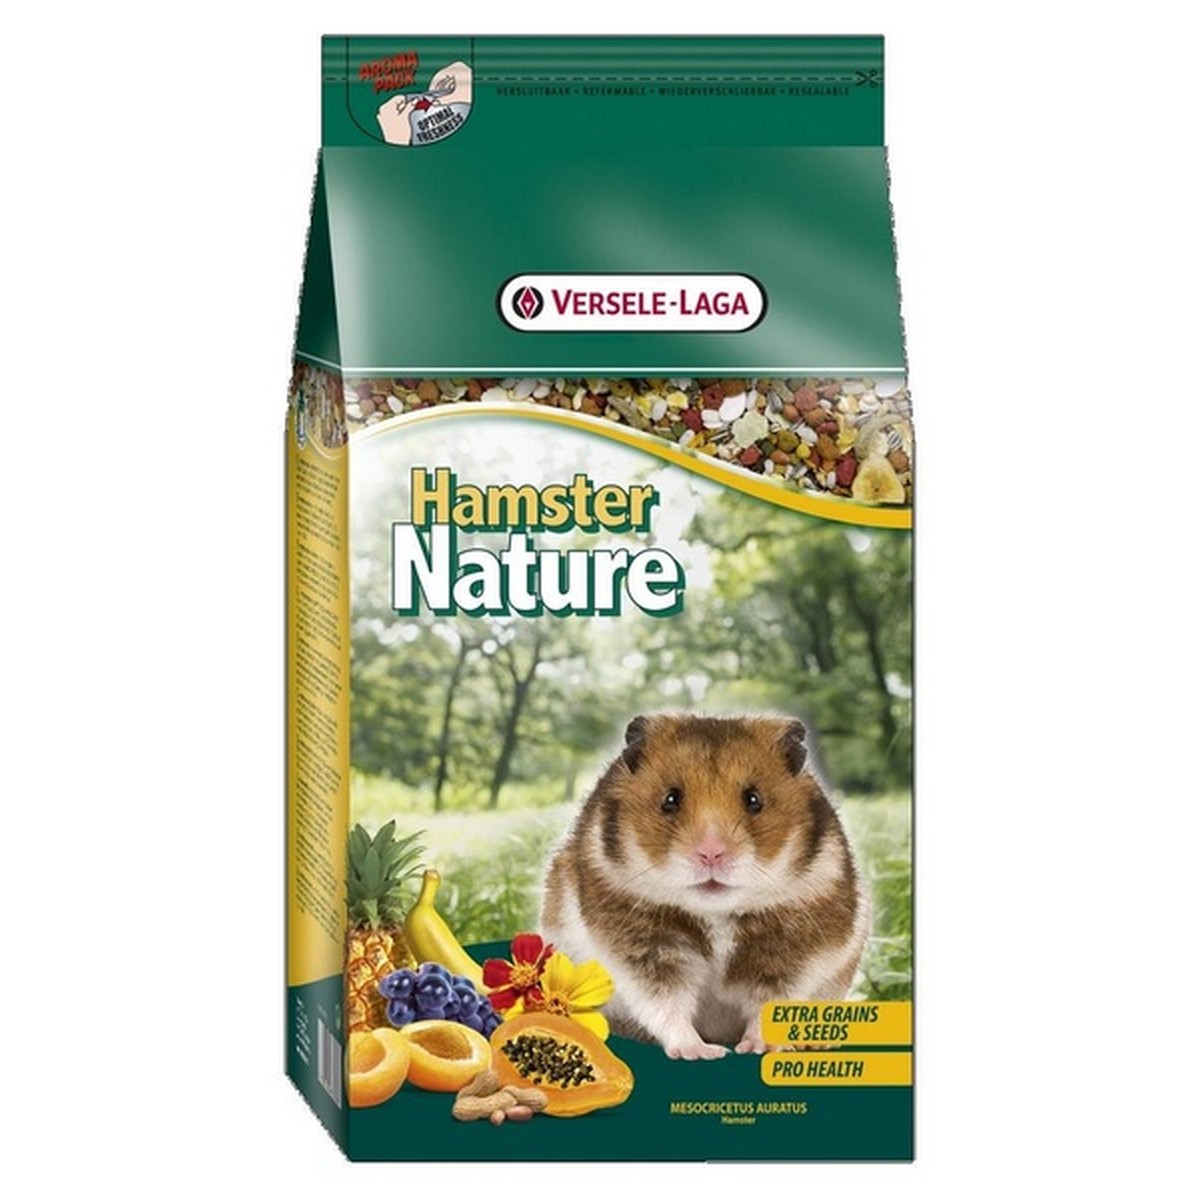   Hamster Nature 2.5 kg  2.5kg